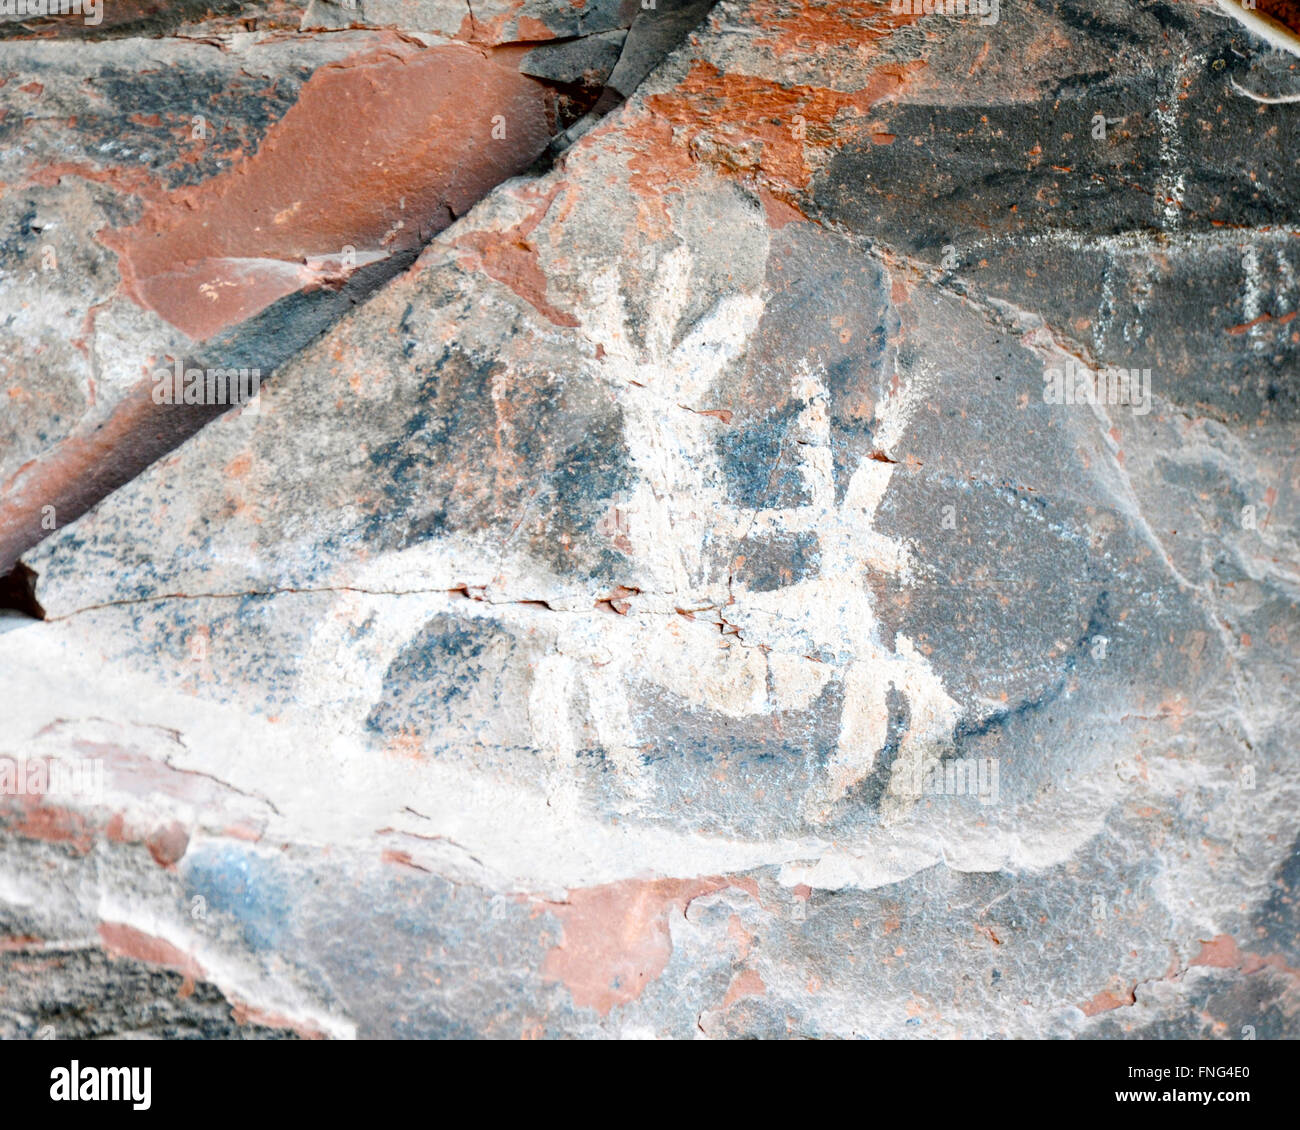 Native American pictografías y petroglifos dibujado o pintado en una roca, tallando imágenes y arte rupestre prehistórico. Foto de stock